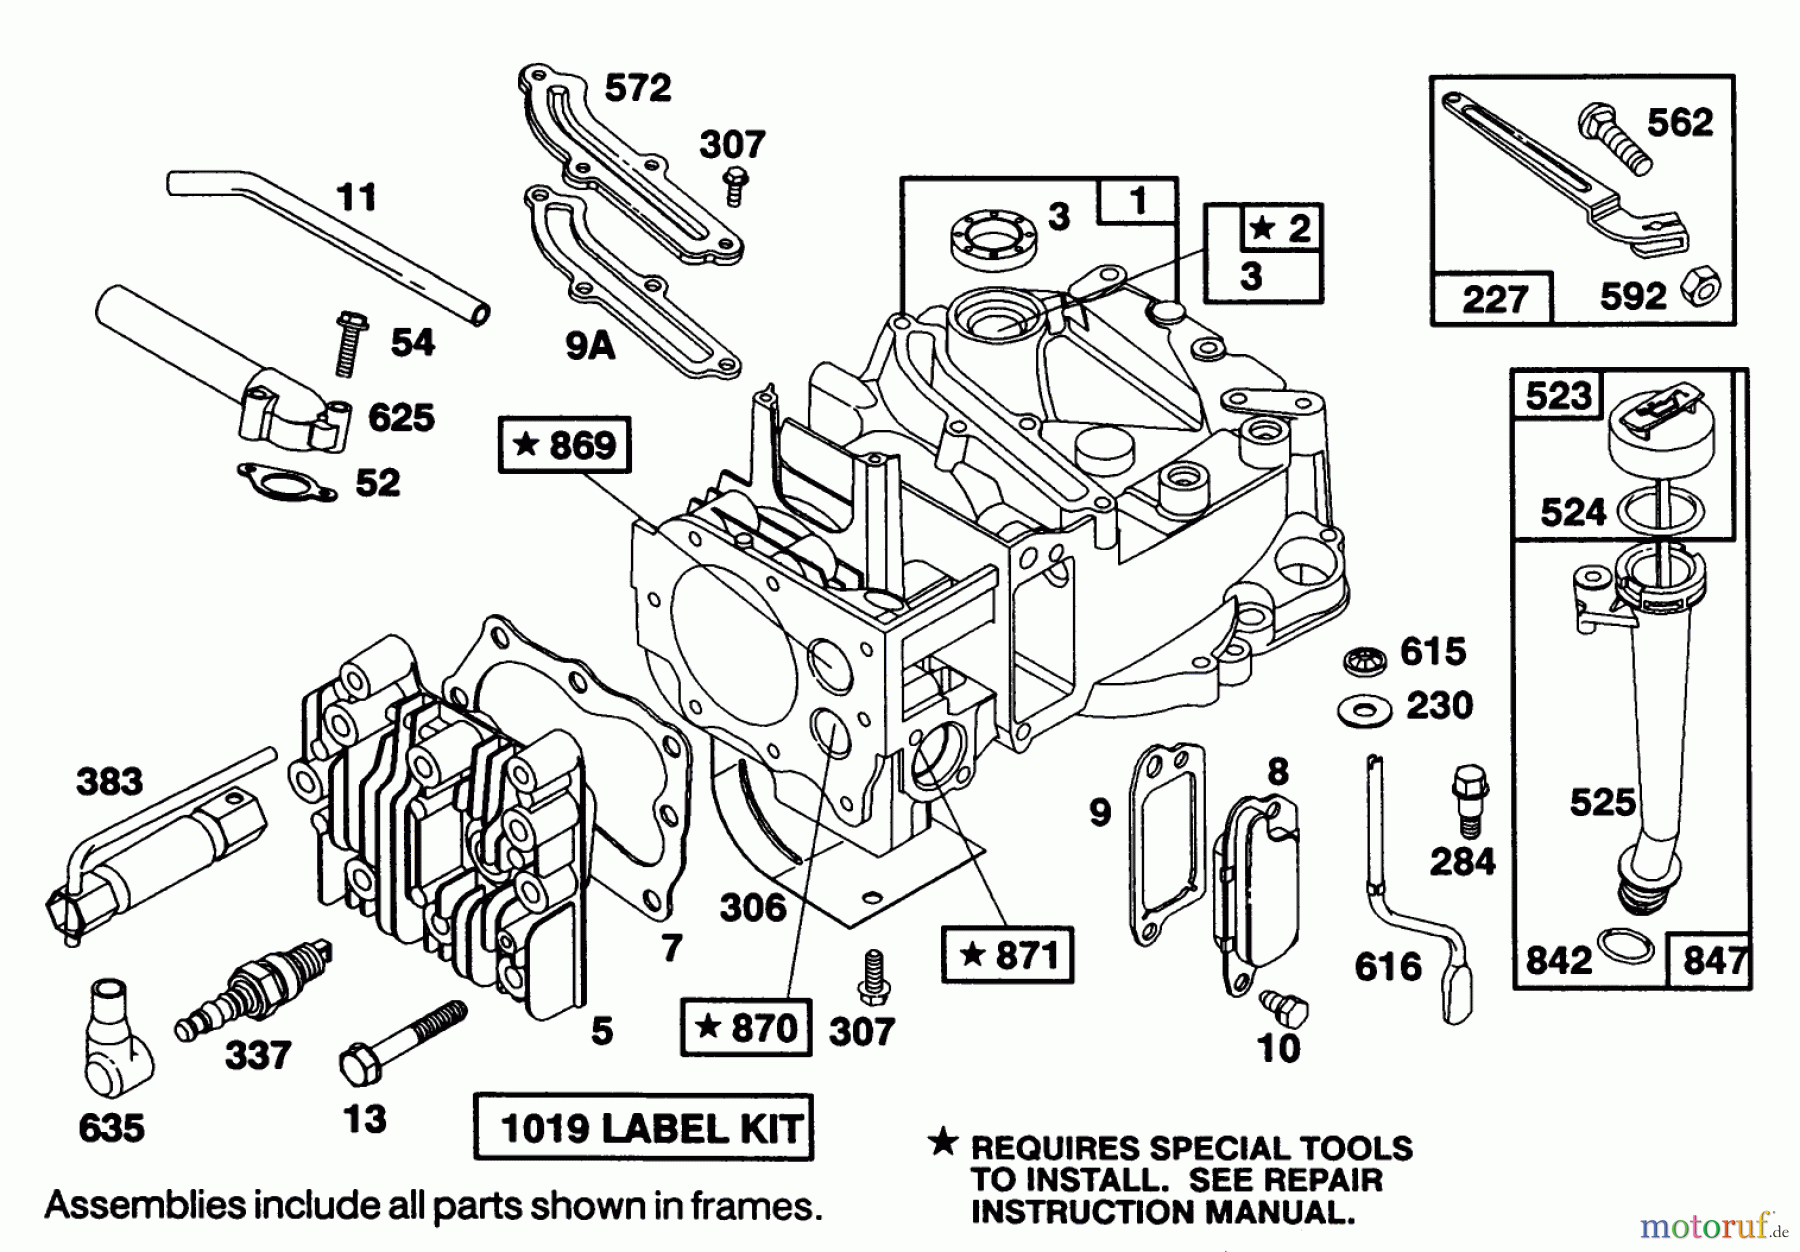  Toro Neu Mowers, Walk-Behind Seite 1 20218 - Toro Lawnmower, 1992 (2000001-2999999) ENGINE BRIGGS & STRATTON MODEL 124702-3115-01 #1